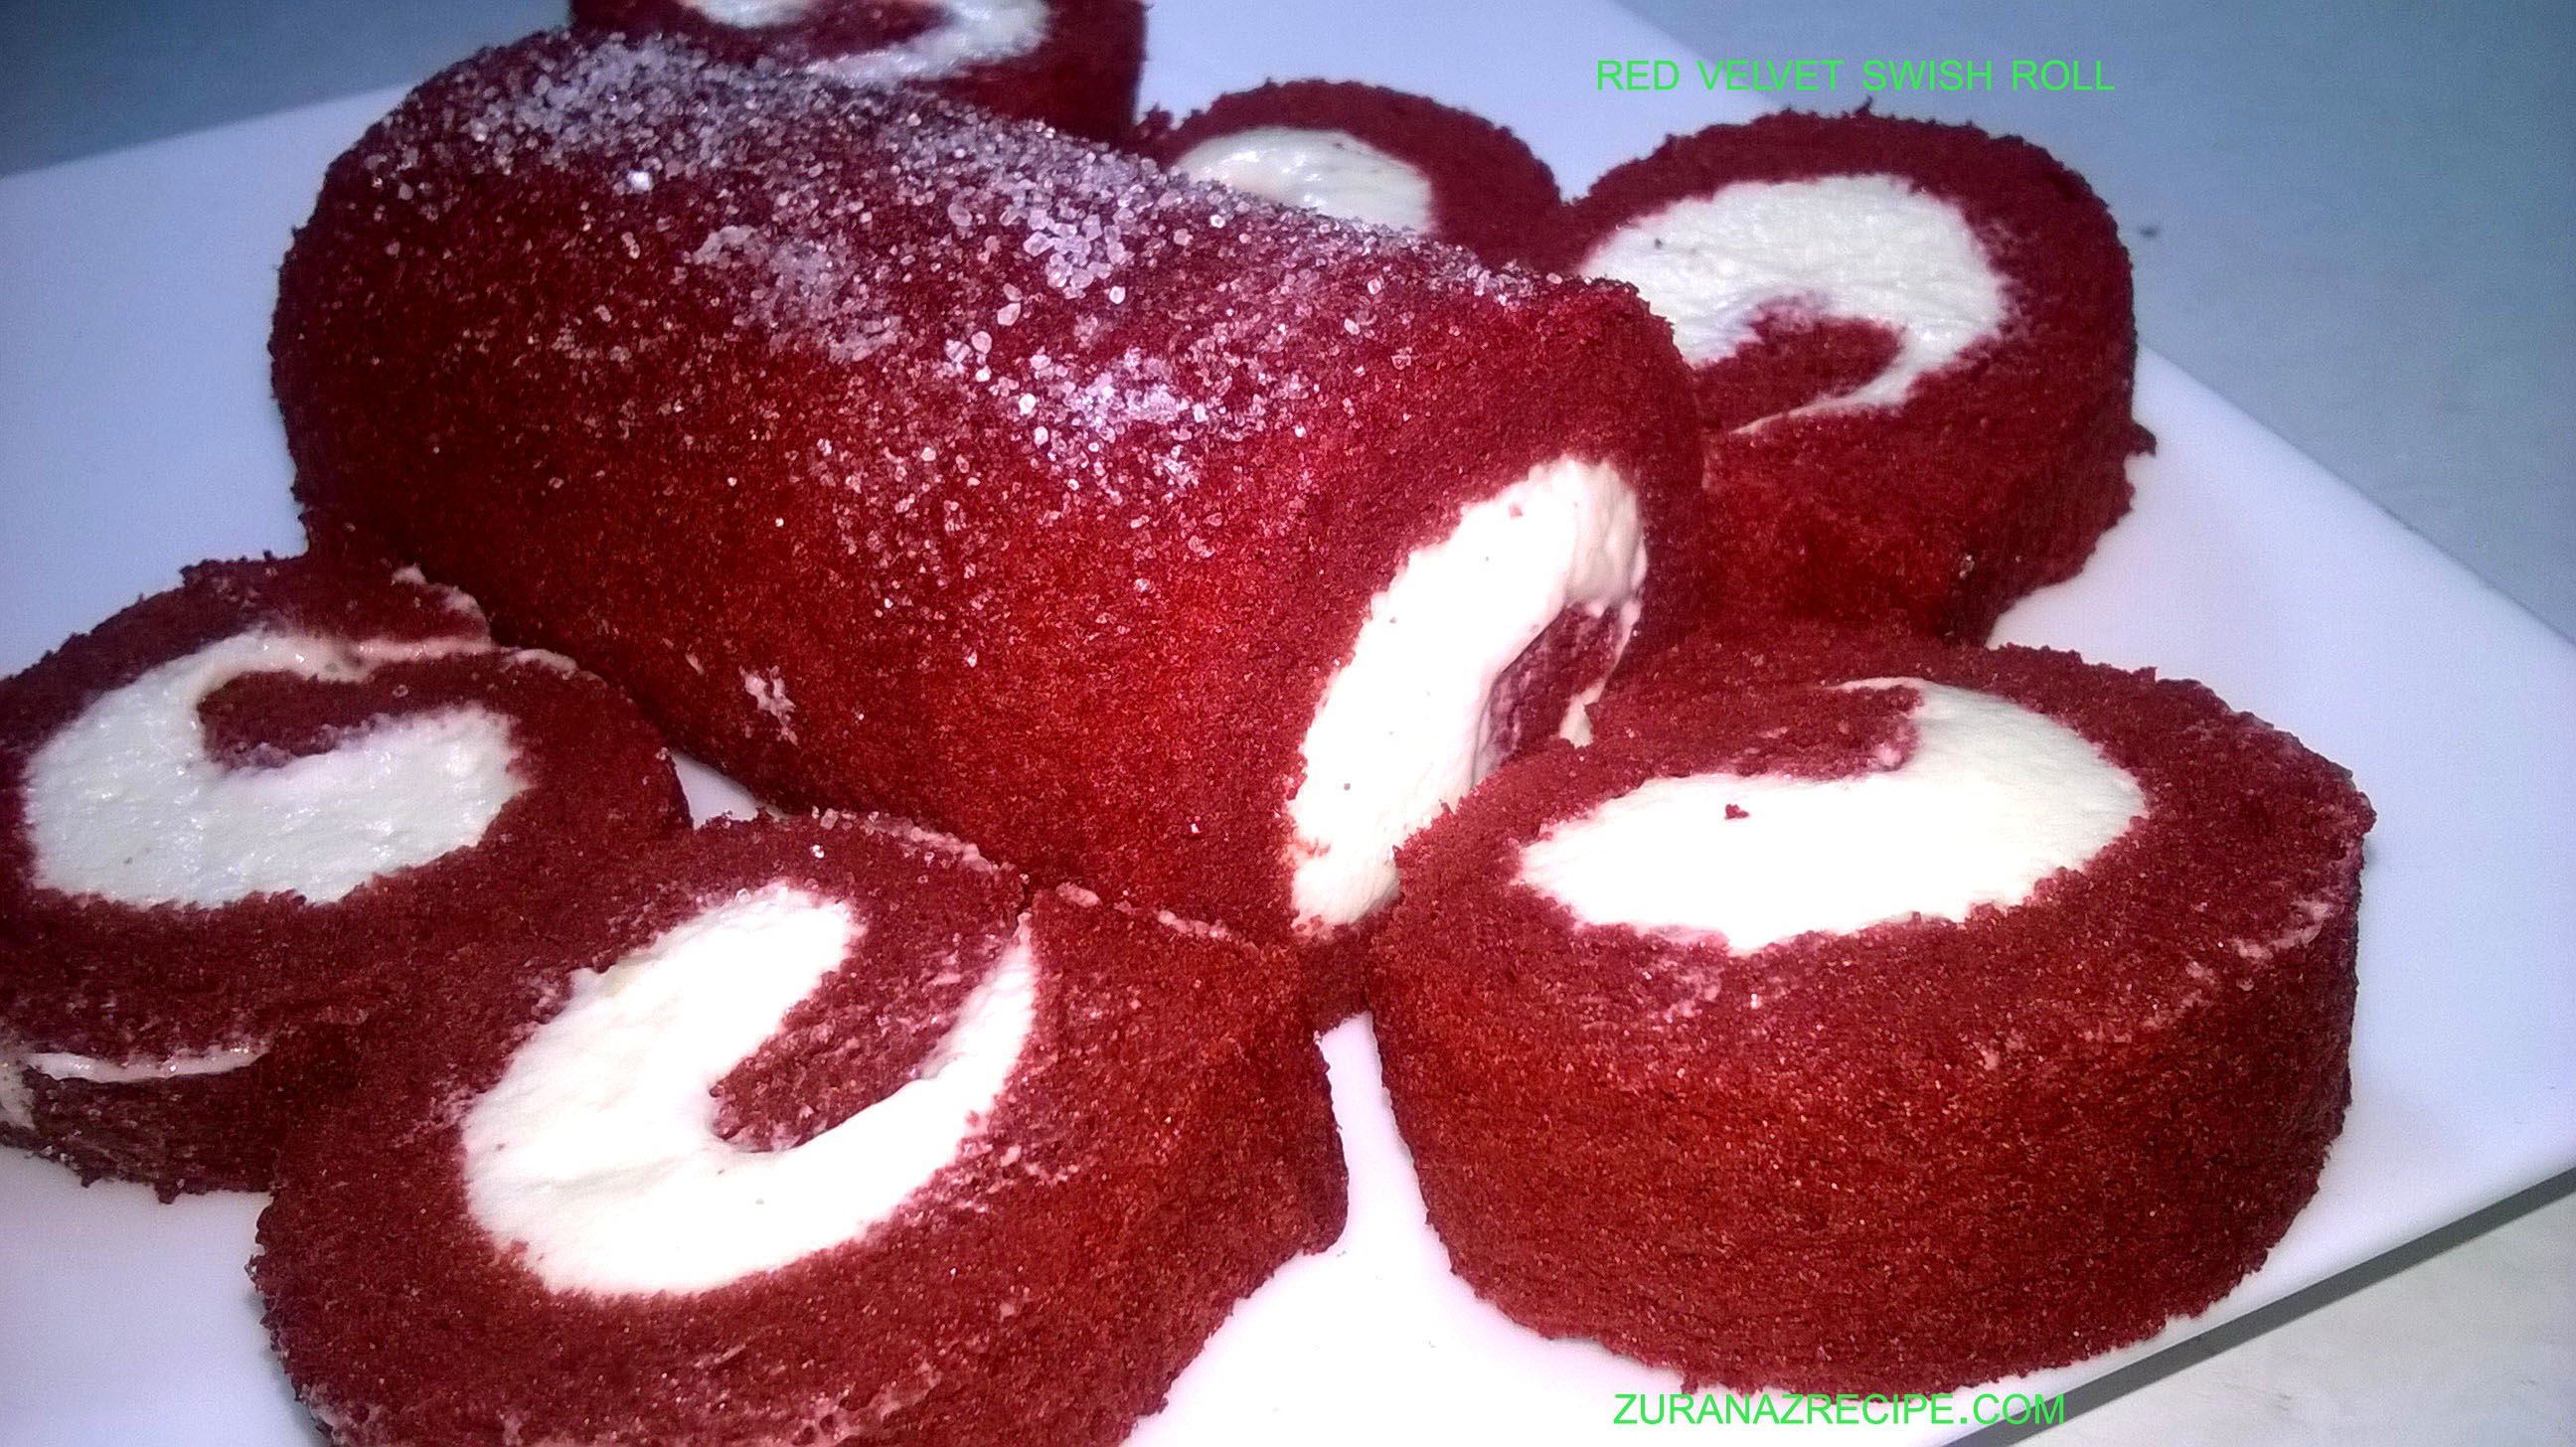 Red Velvet Cake Roll/Red Velvet Swiss Roll